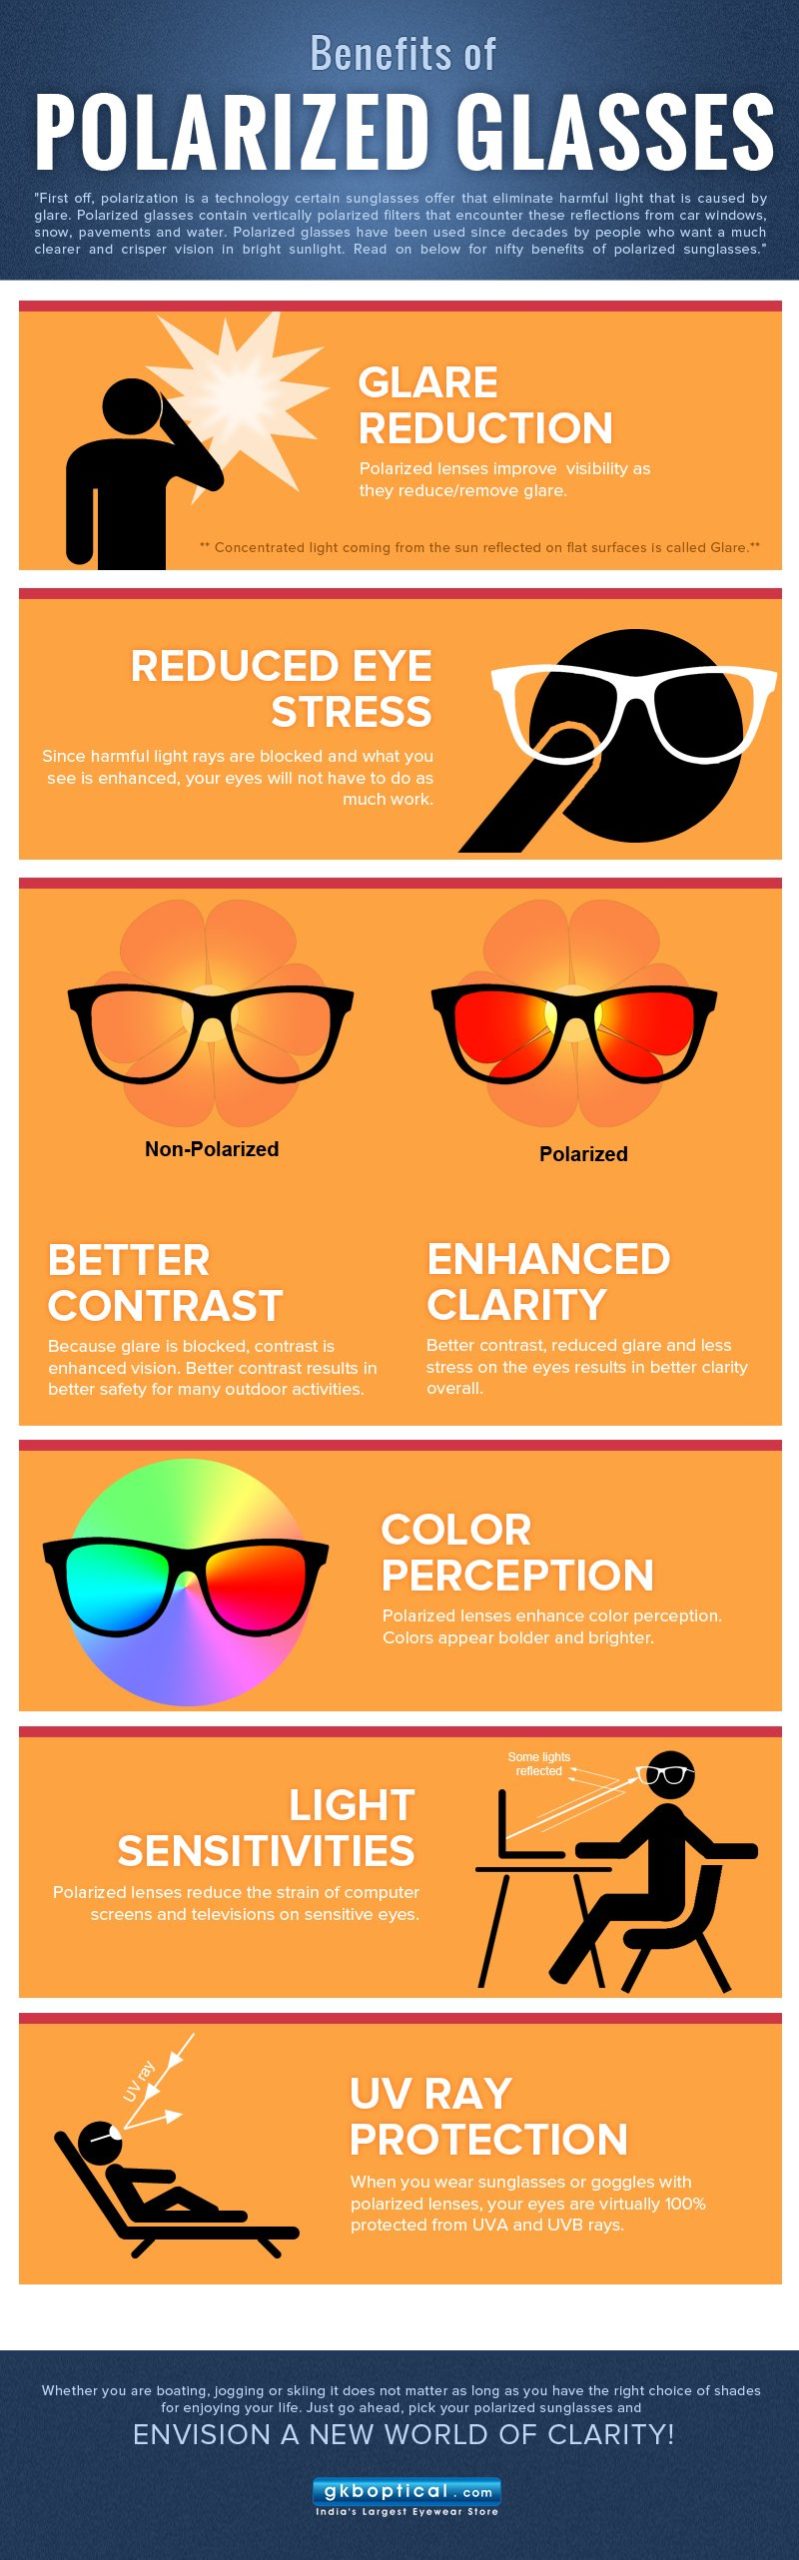 Polarized Glasses Benefits